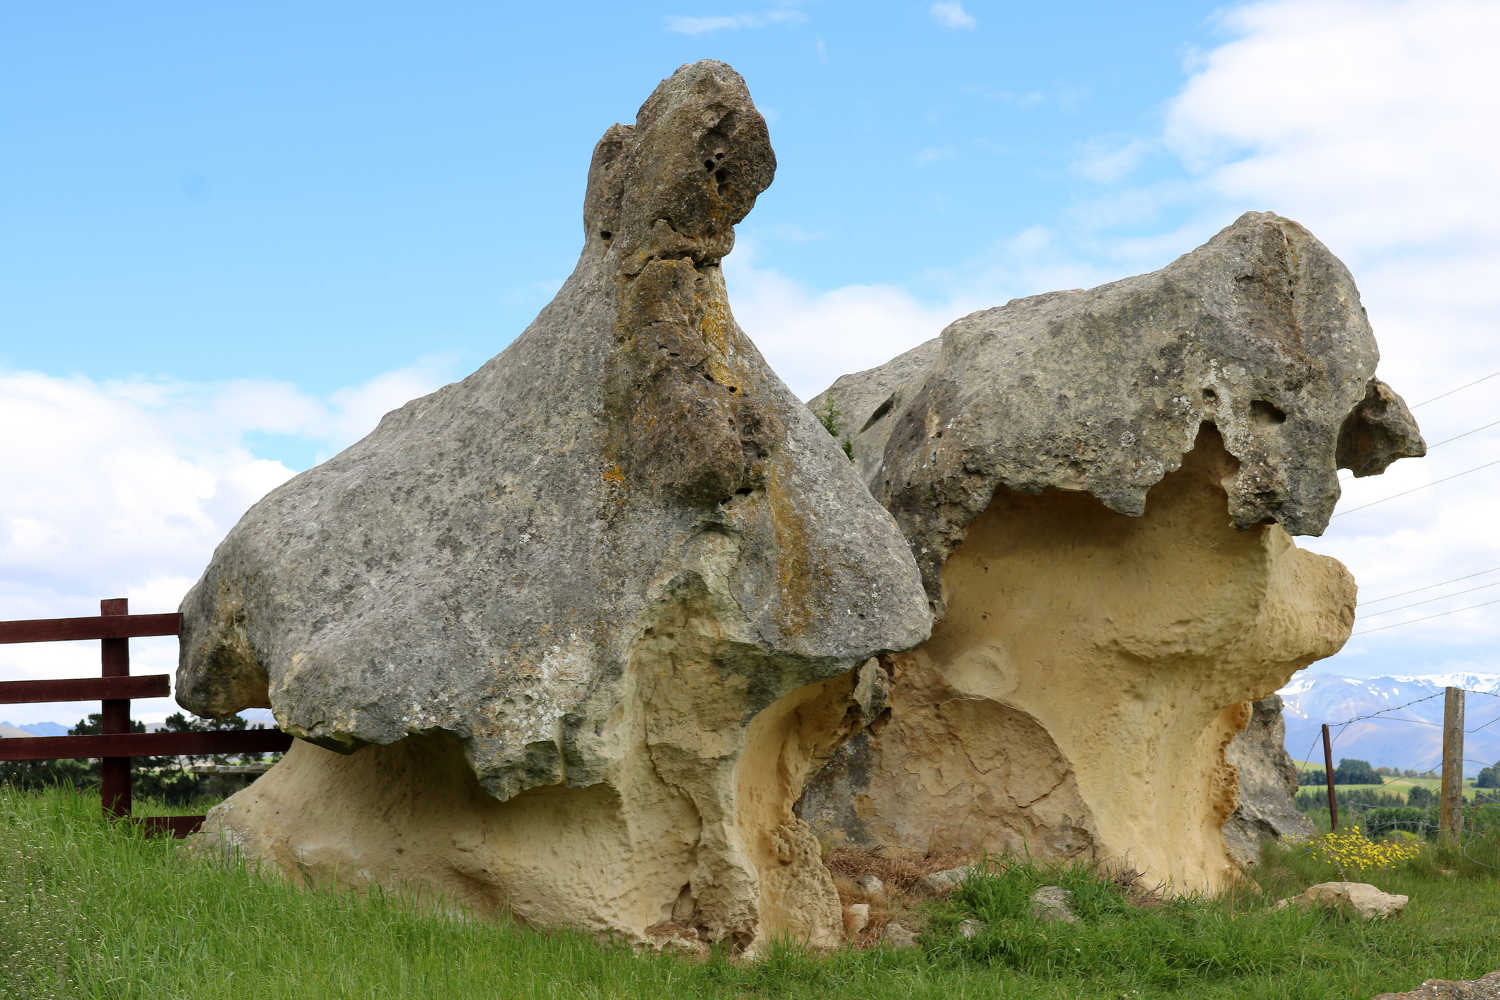 Takiroa Rock Art site near Duntroon village in South Island, New Zealand